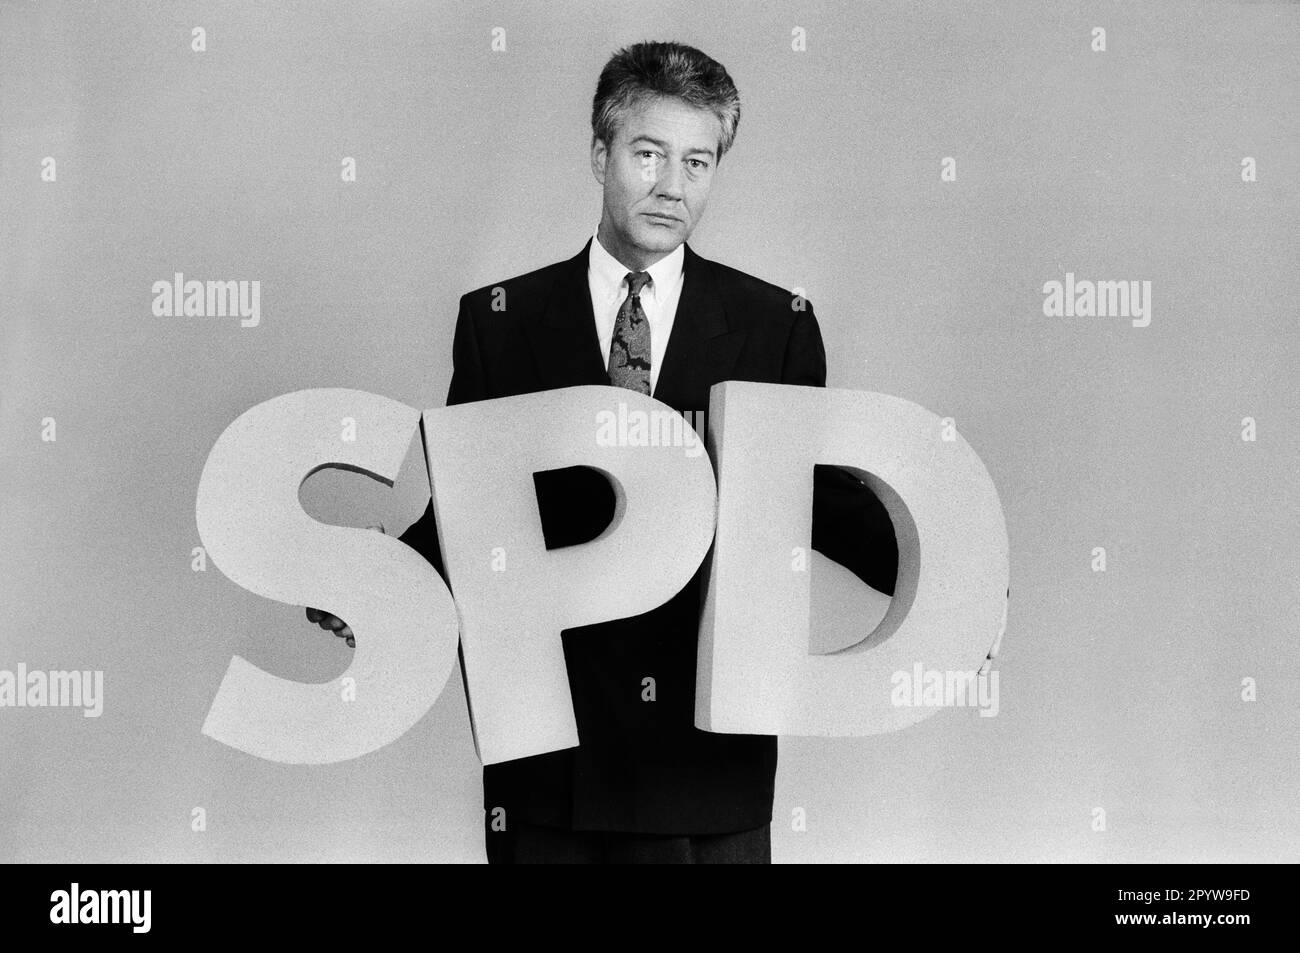 Allemagne, Bonn, 17.05.1991. Archive: 27-59-25 pour votre archive! Photo: Bjoern Engholm, président fédéral désigné du SPD [traduction automatique] Banque D'Images